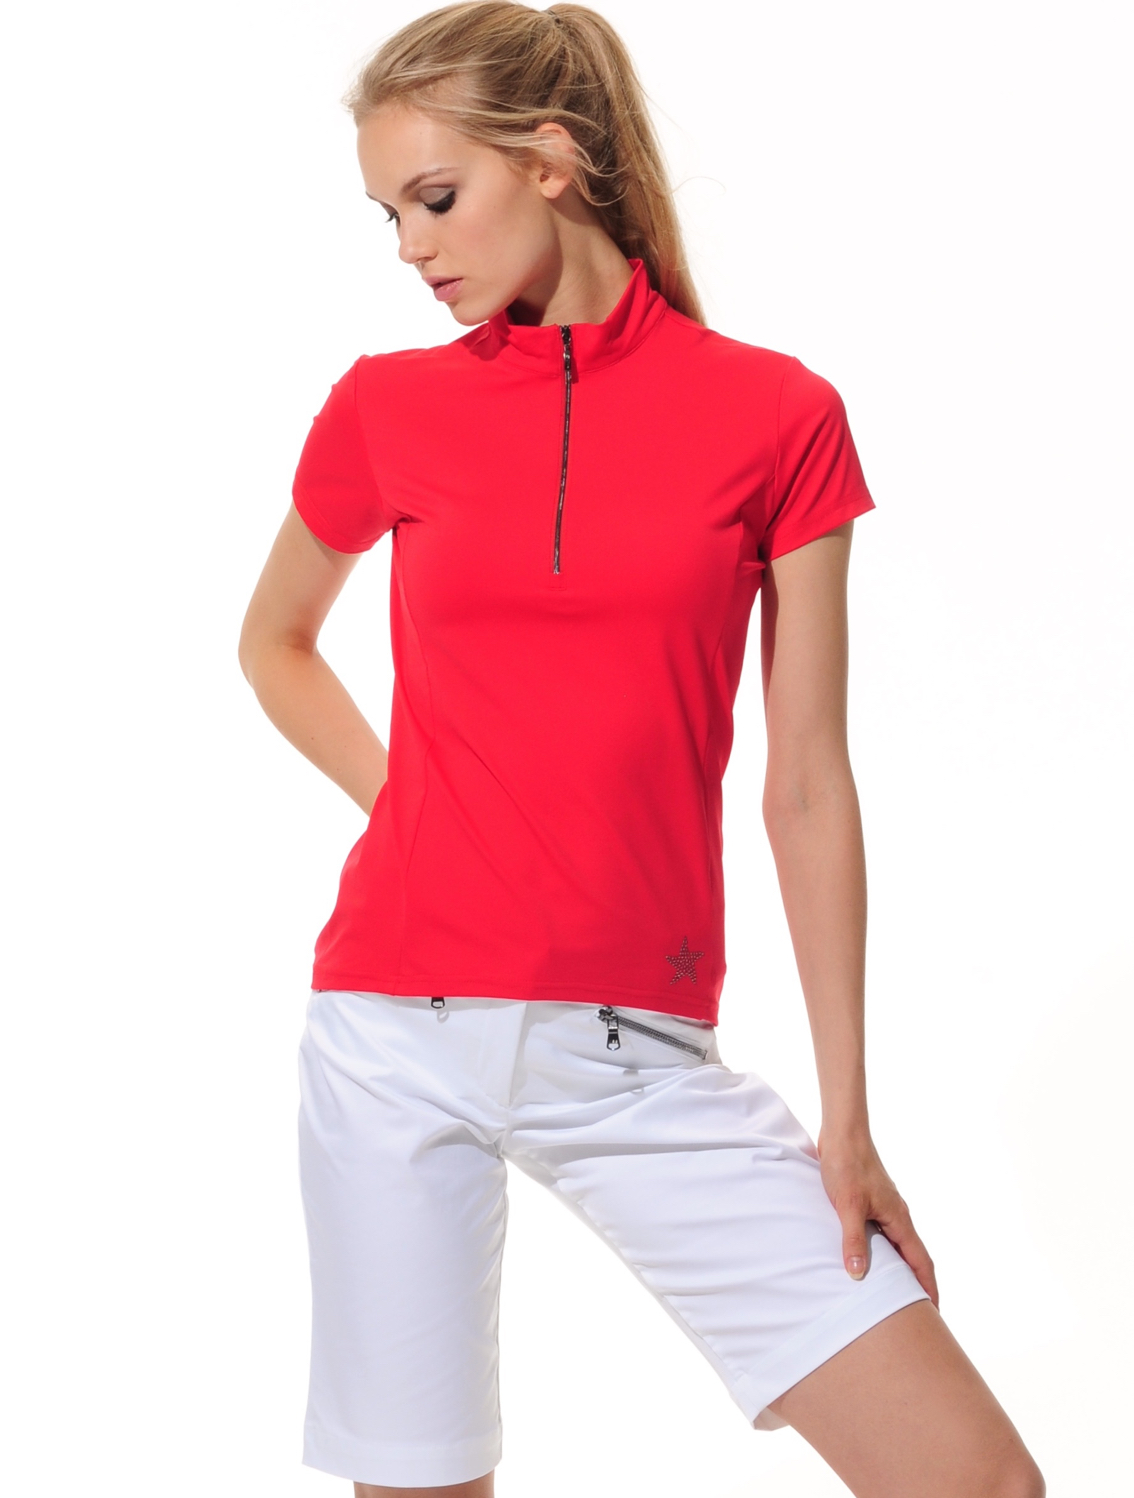 Jersey Zip Poloshirt red